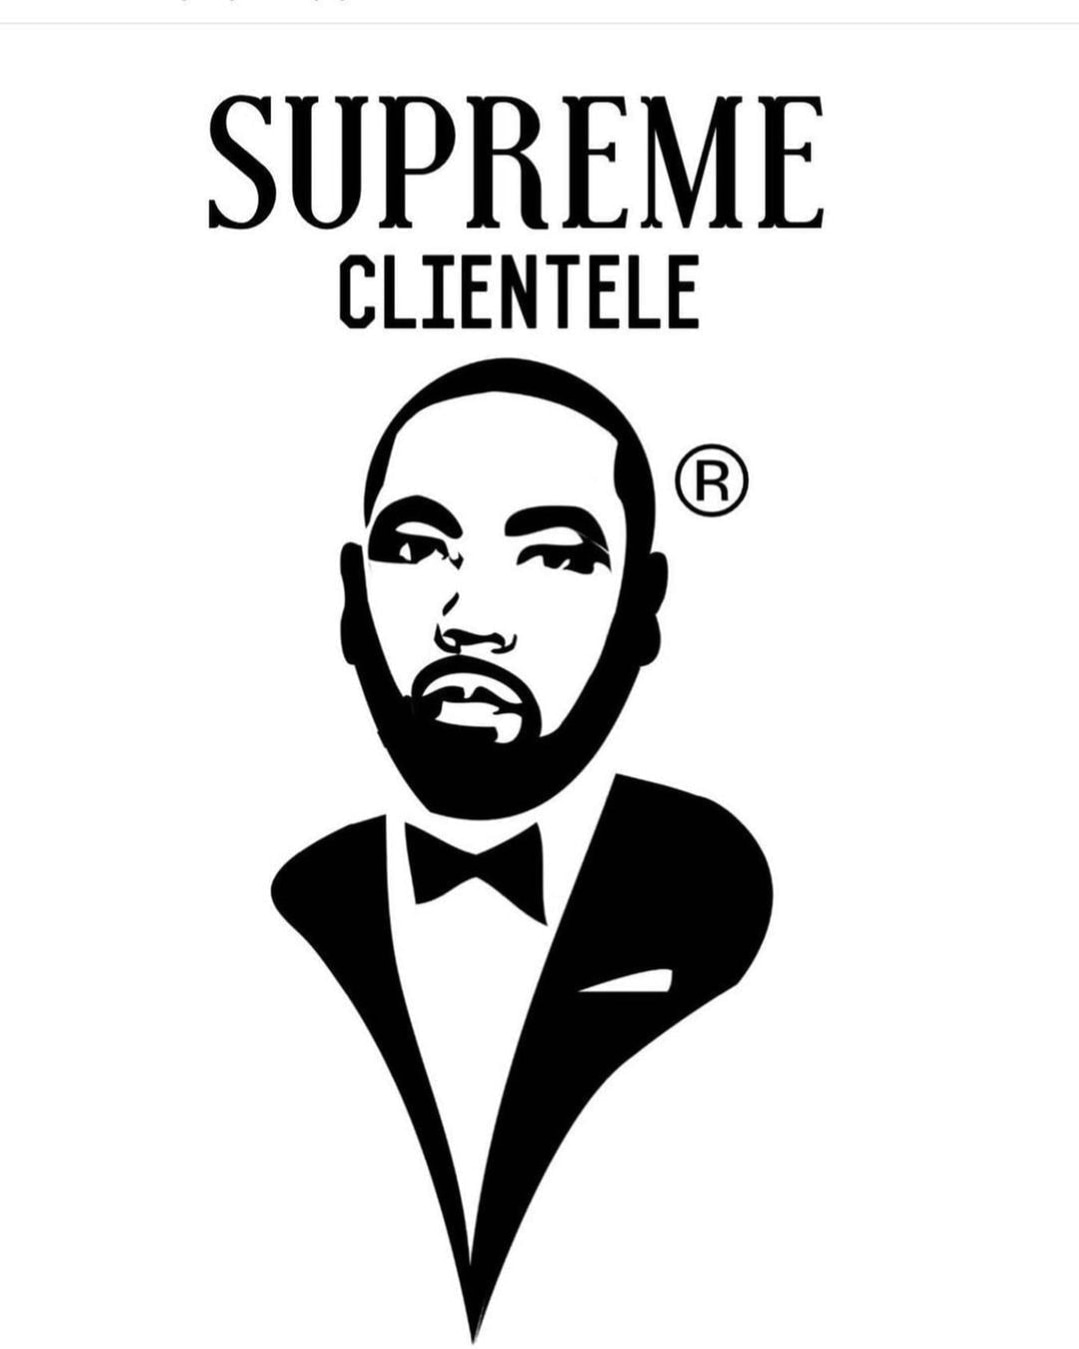 Supreme Clientele